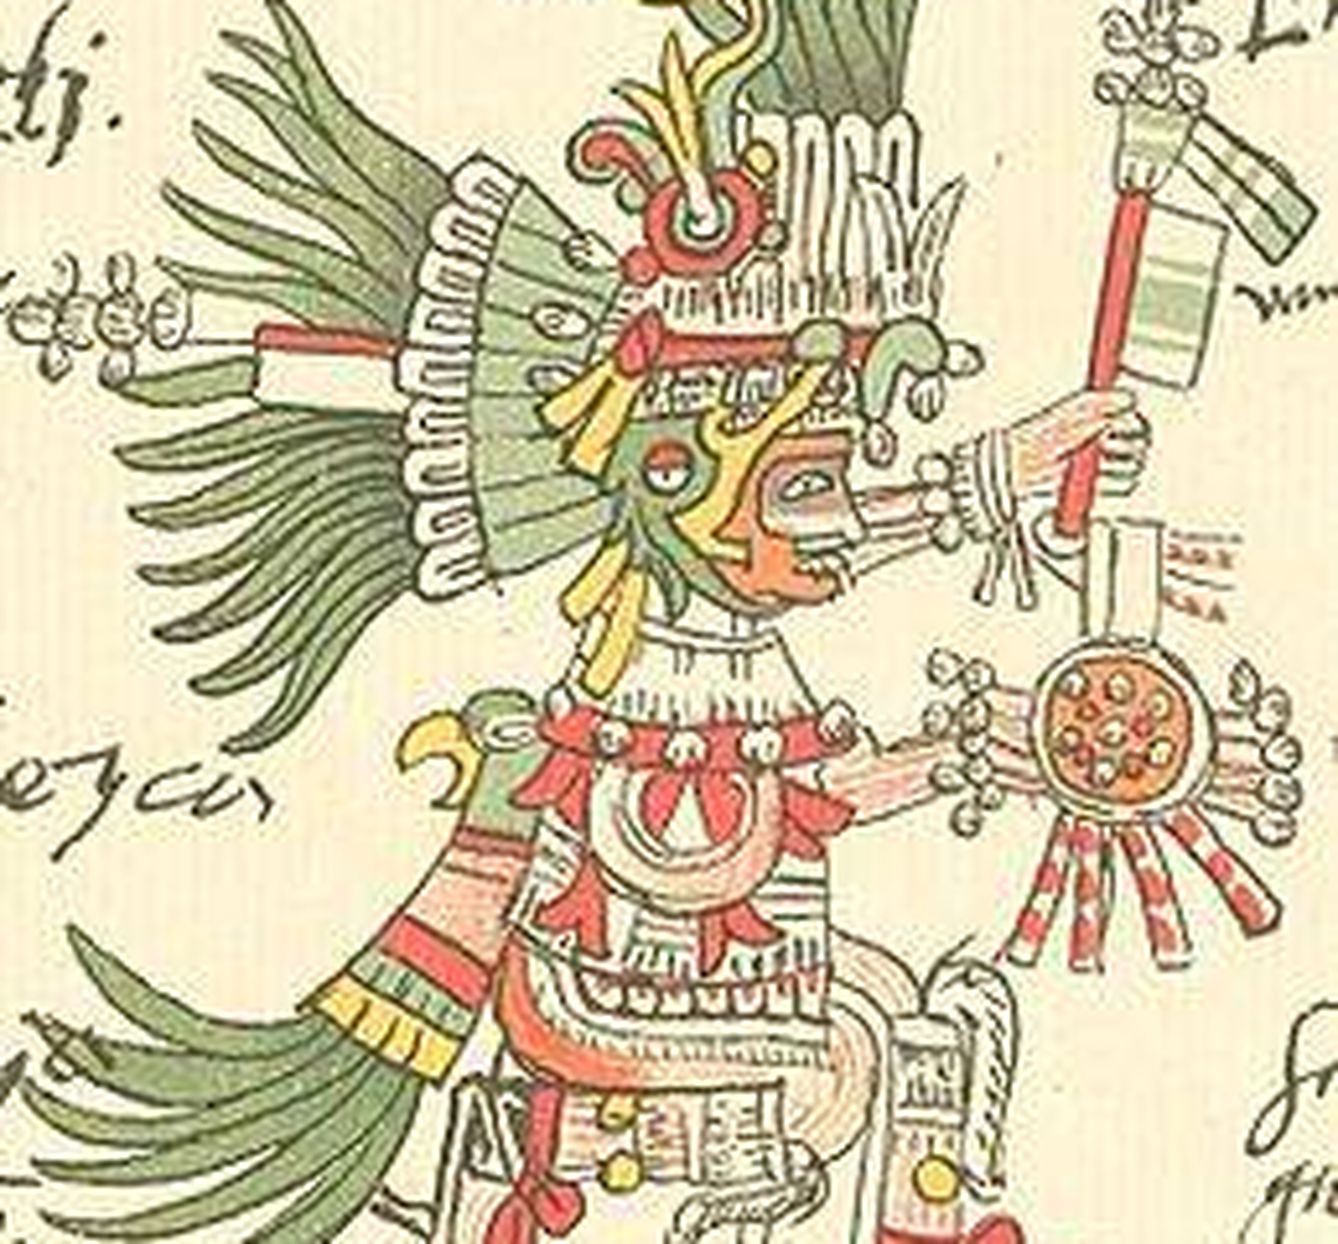 Huitzilopochtli, dios de la guerra.